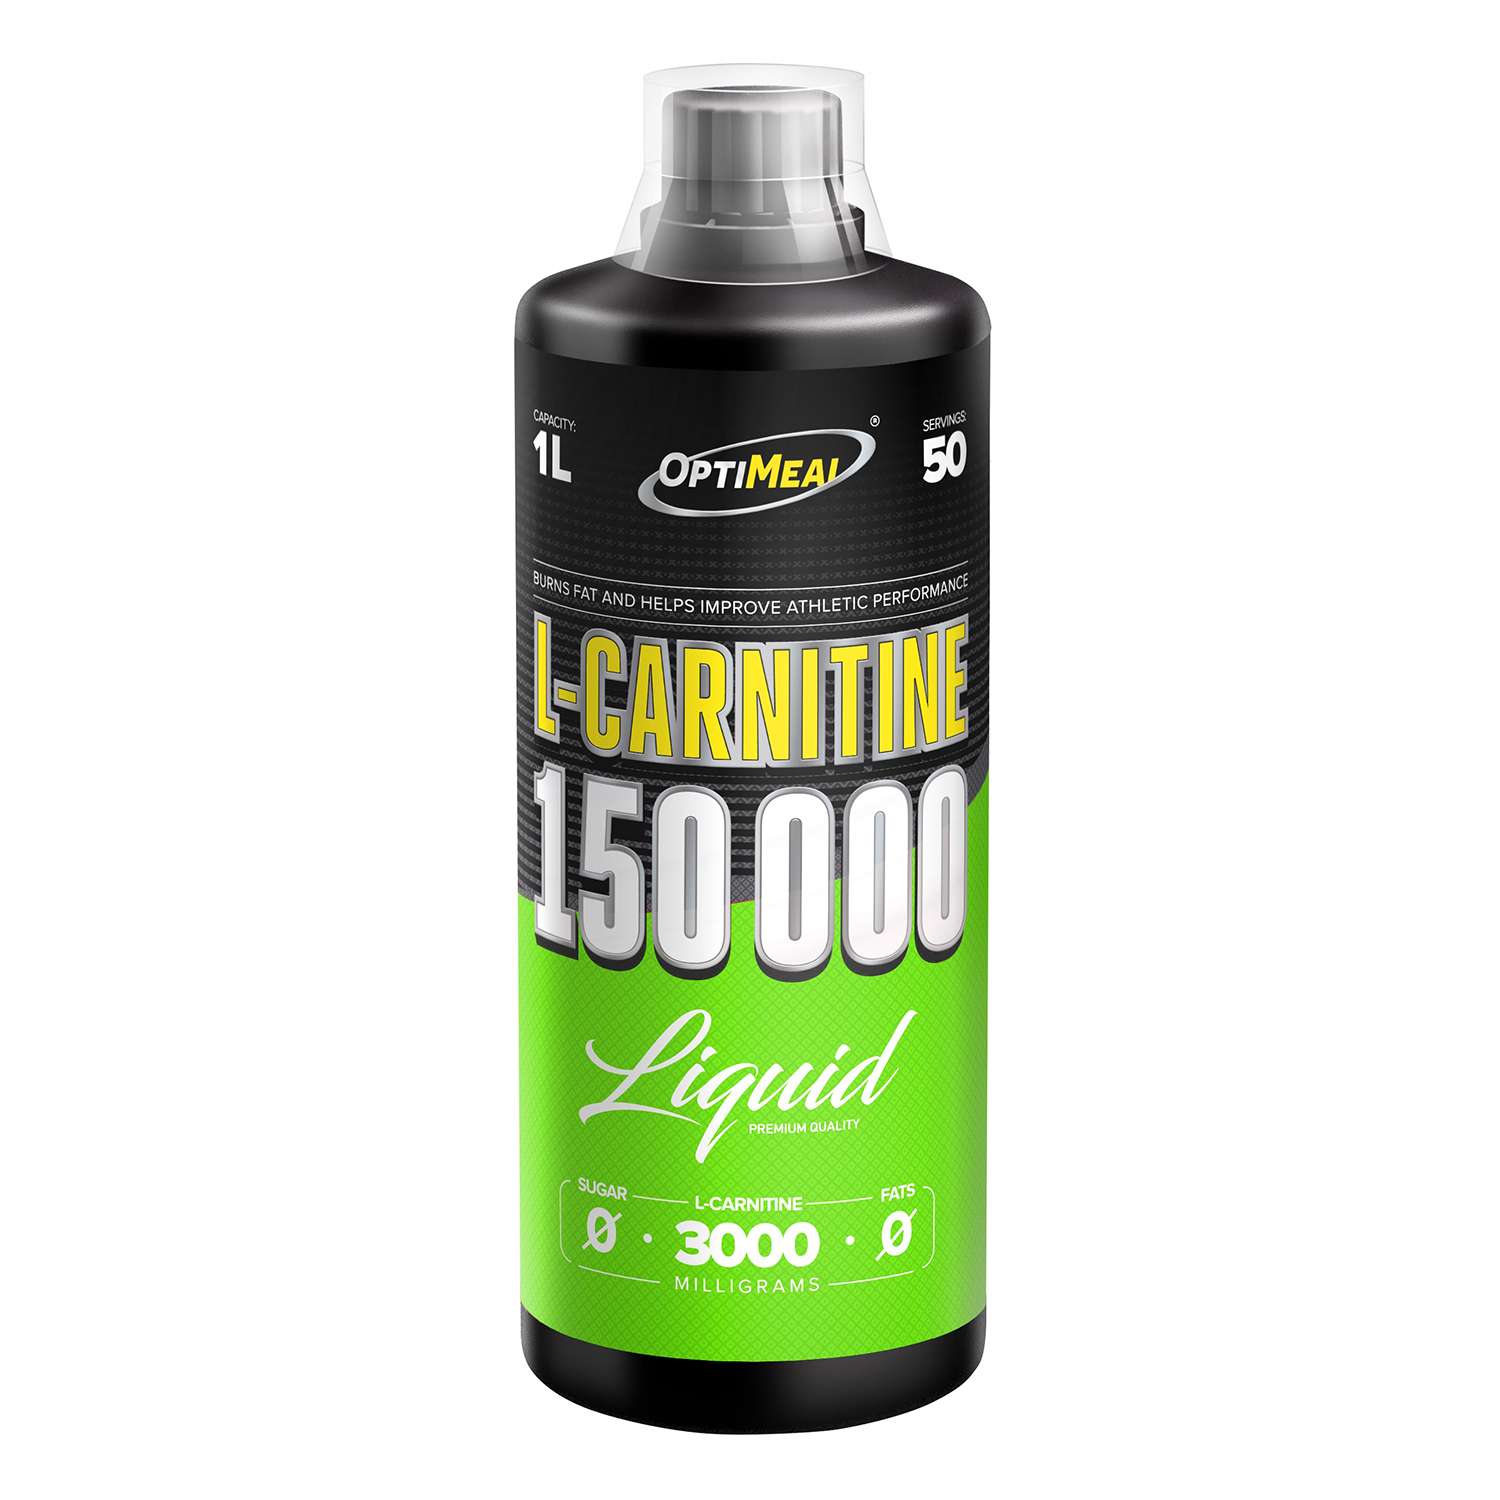 Концентраты карнитина. Liquid l-Carnitine. Карнитин 150000. Карнитин спортпит. Л-карнитин спортивное питание.